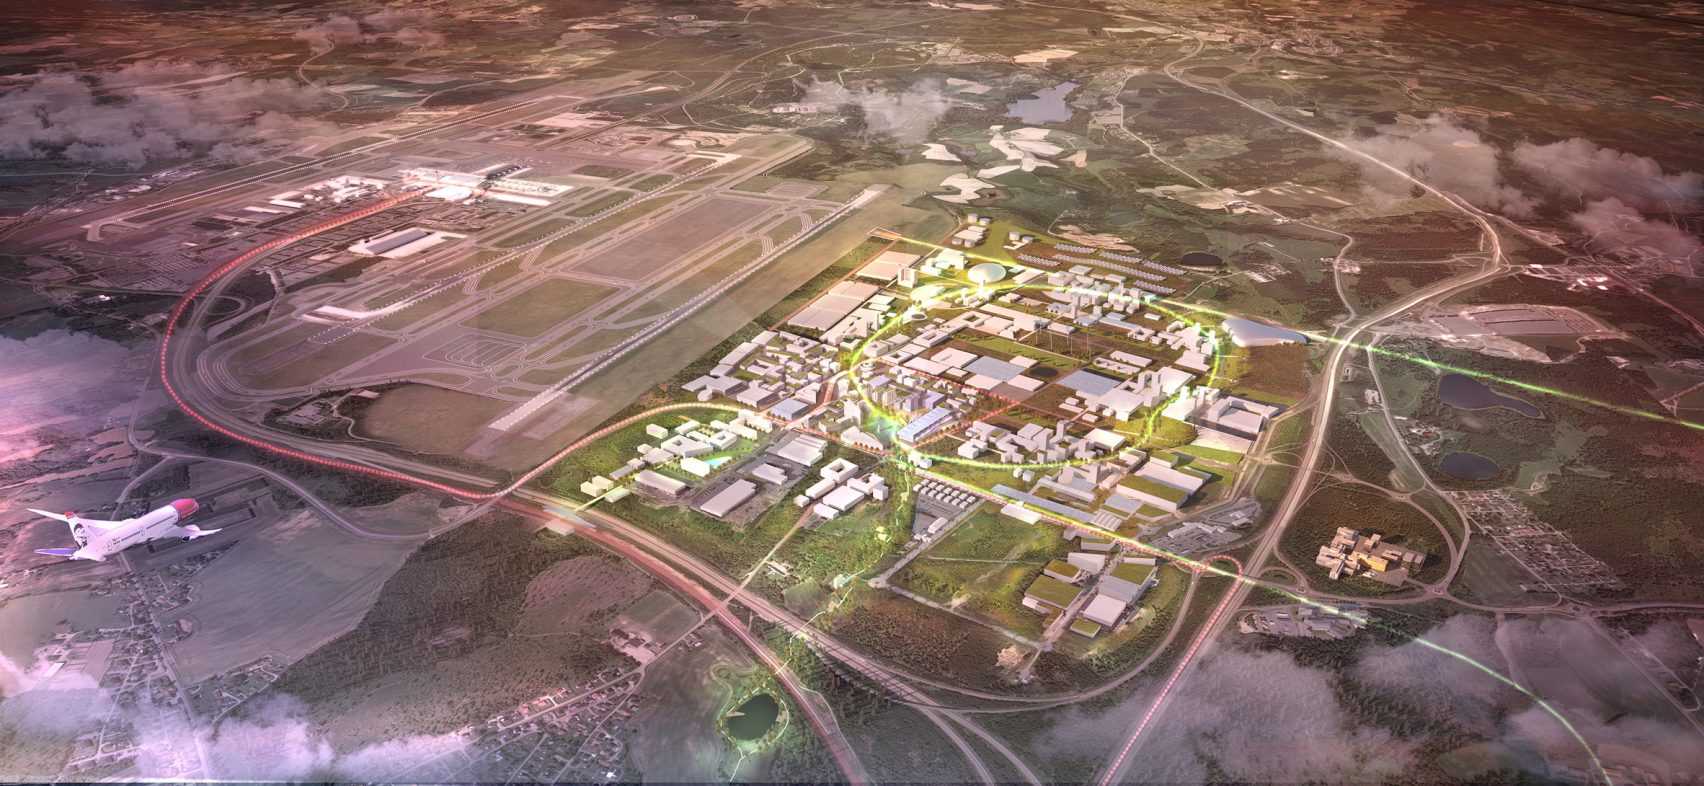  Luchthaven Oslo krijgt duurzame stad van de toekomst